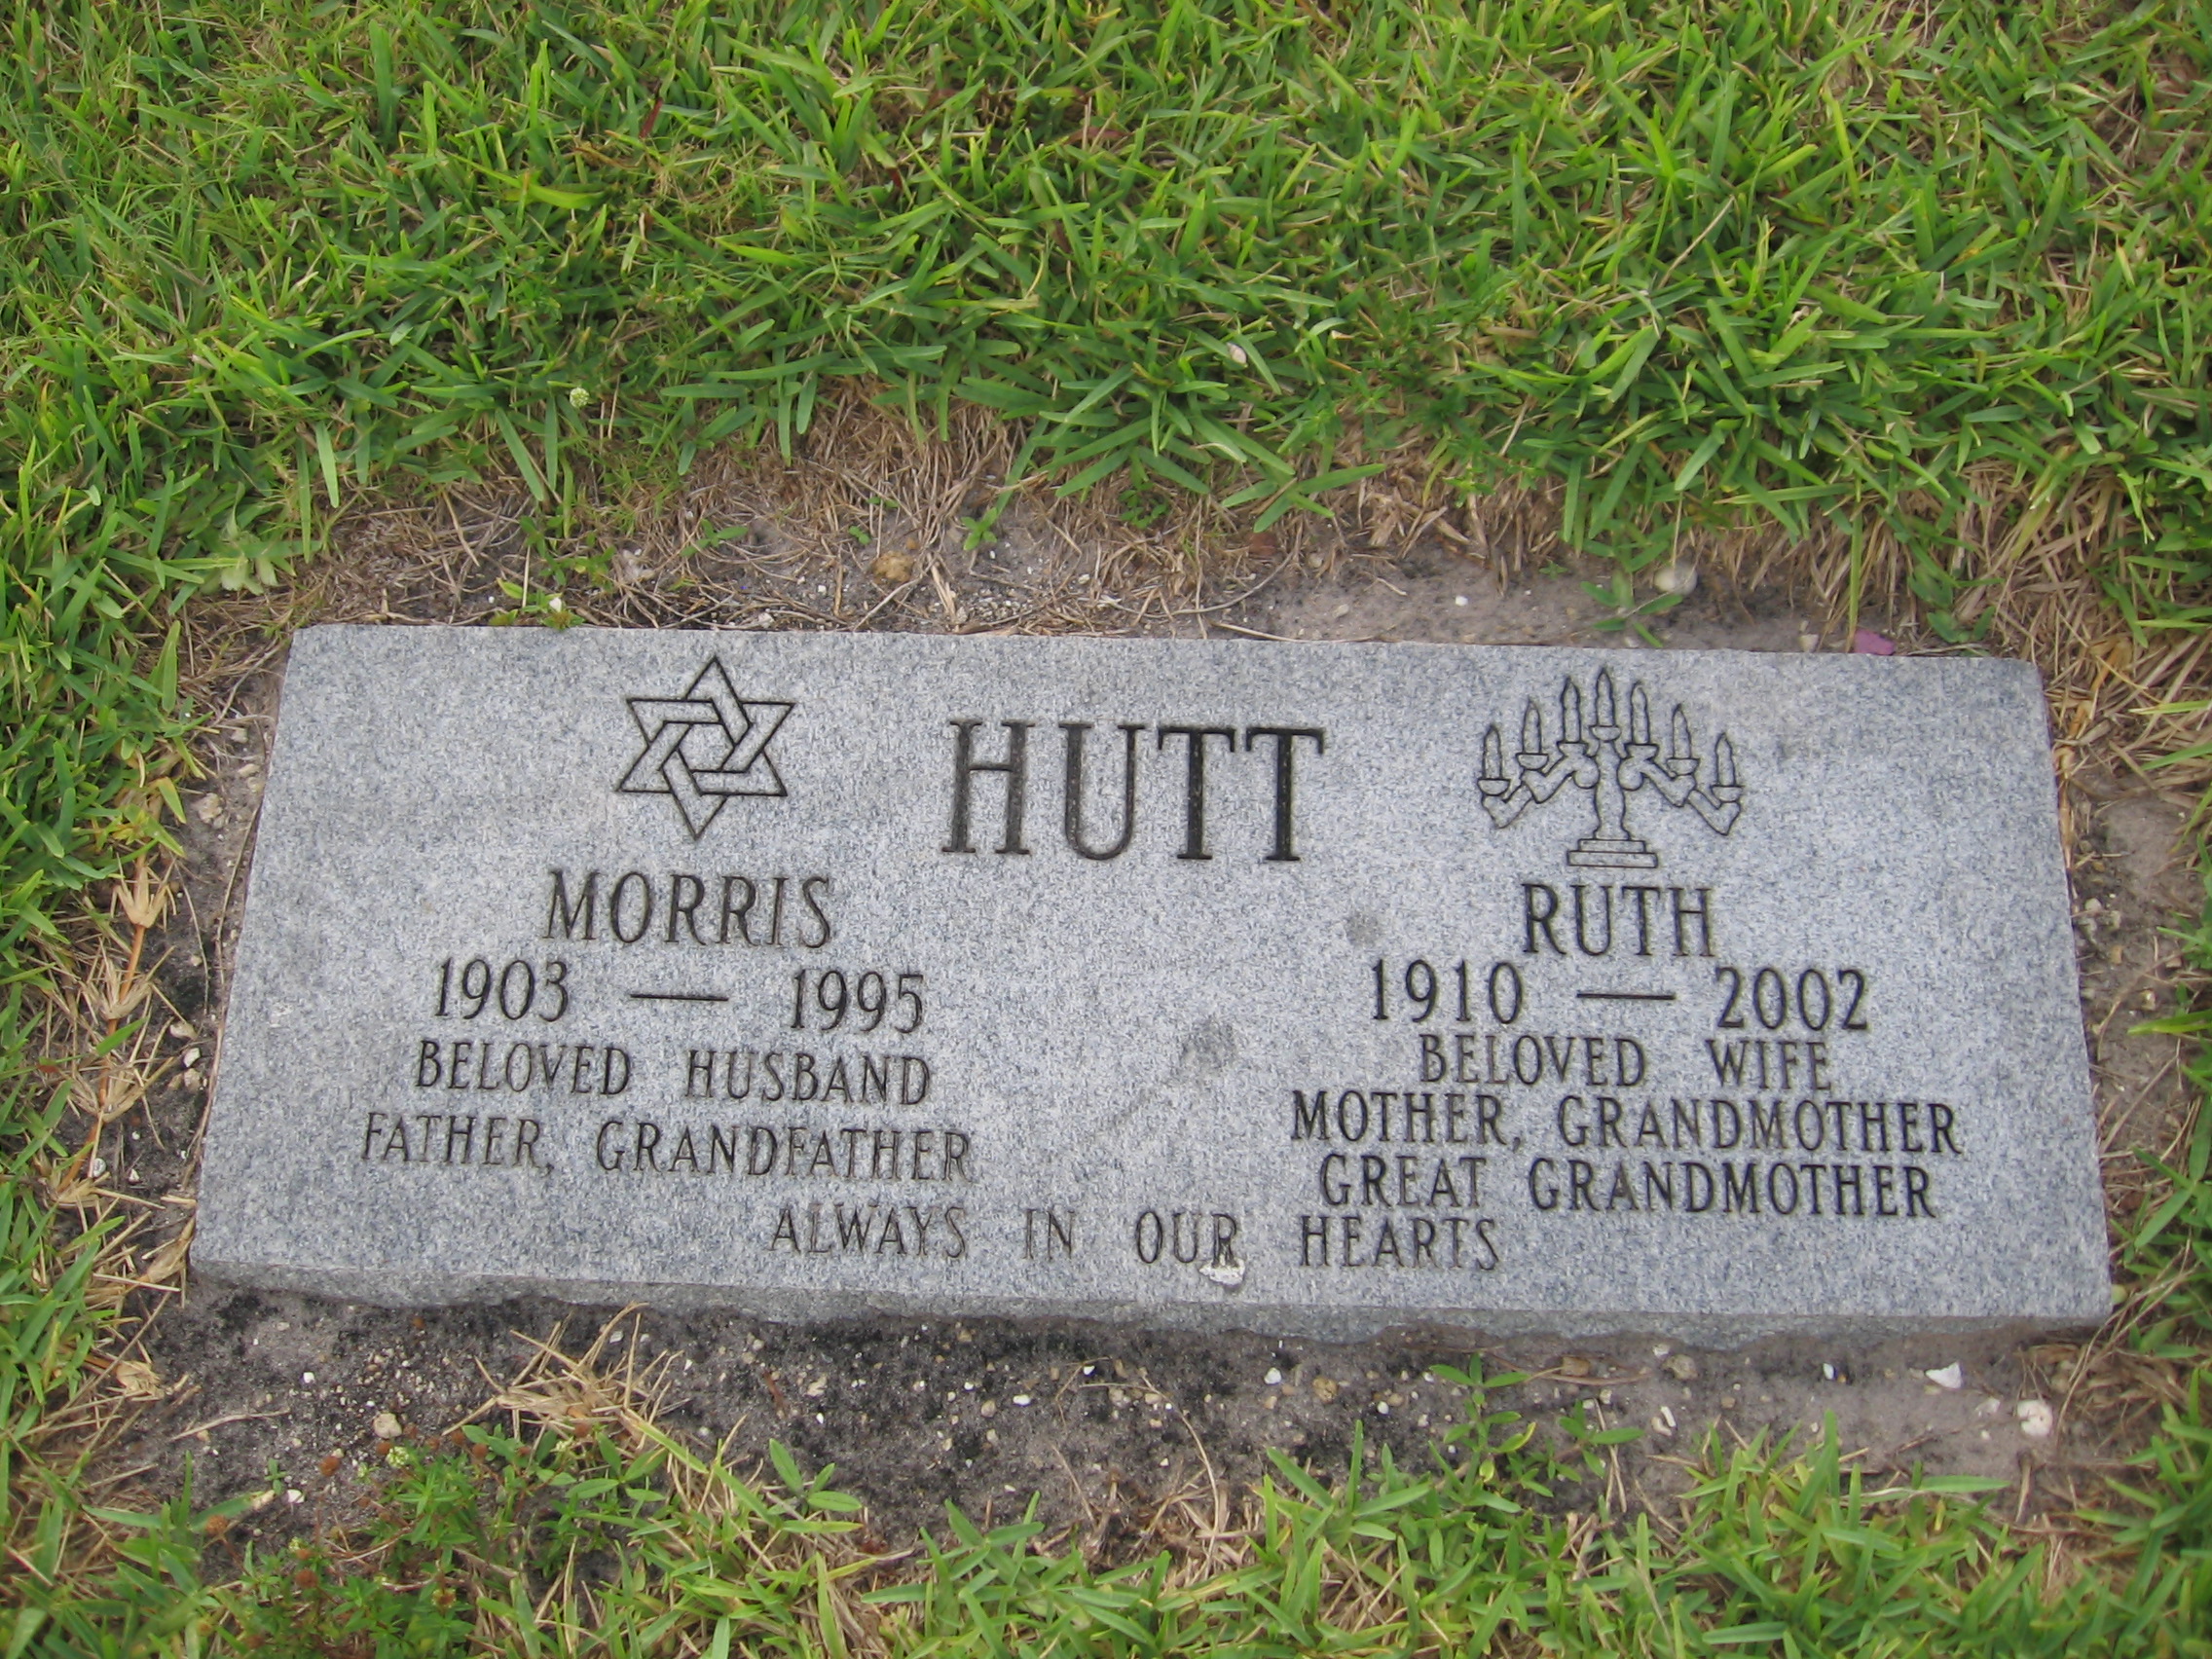 Ruth Hutt